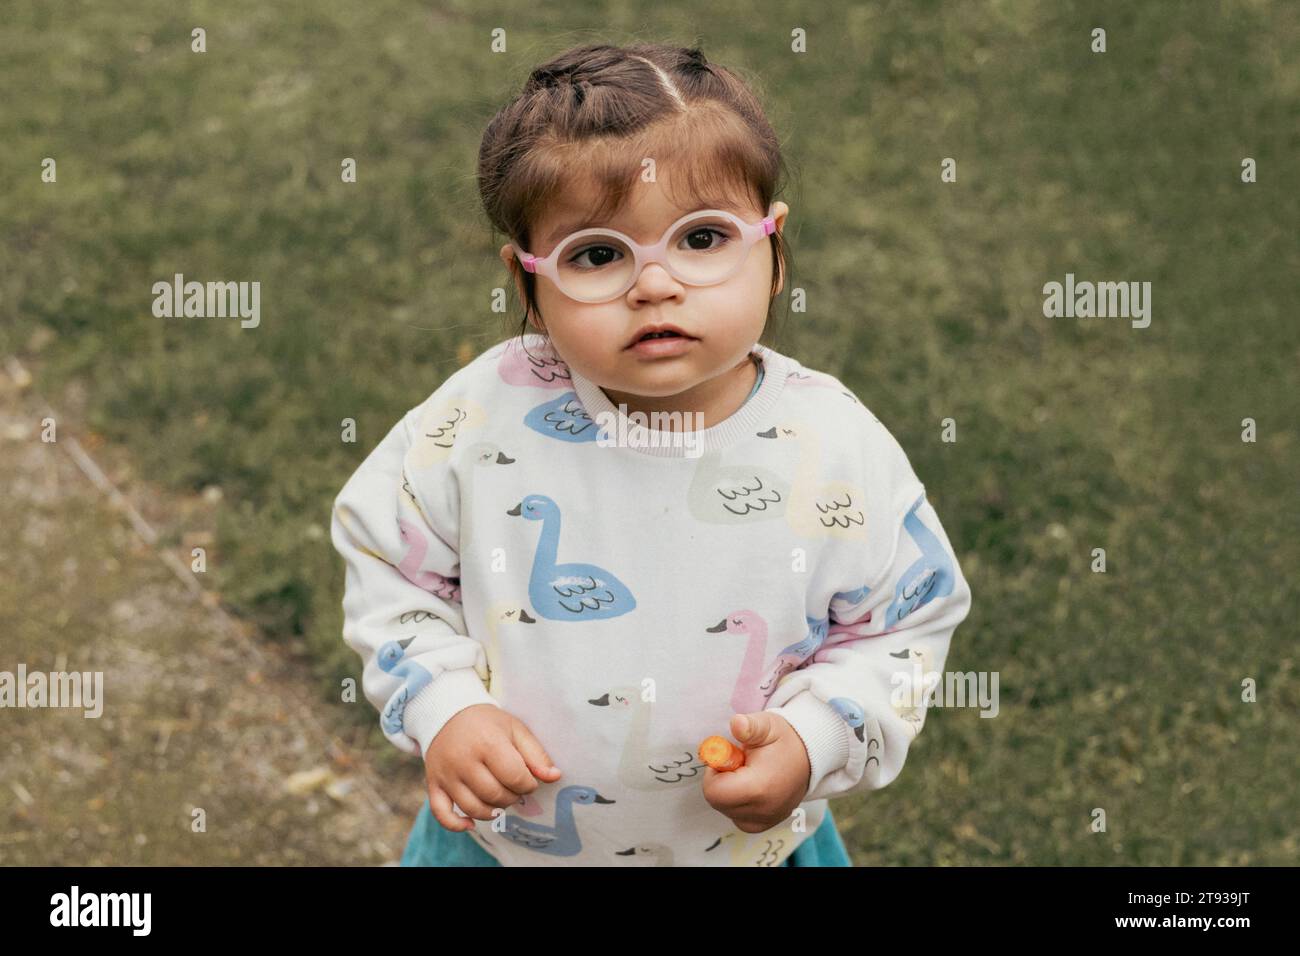 cute little girl in eyeglasses Stock Photo